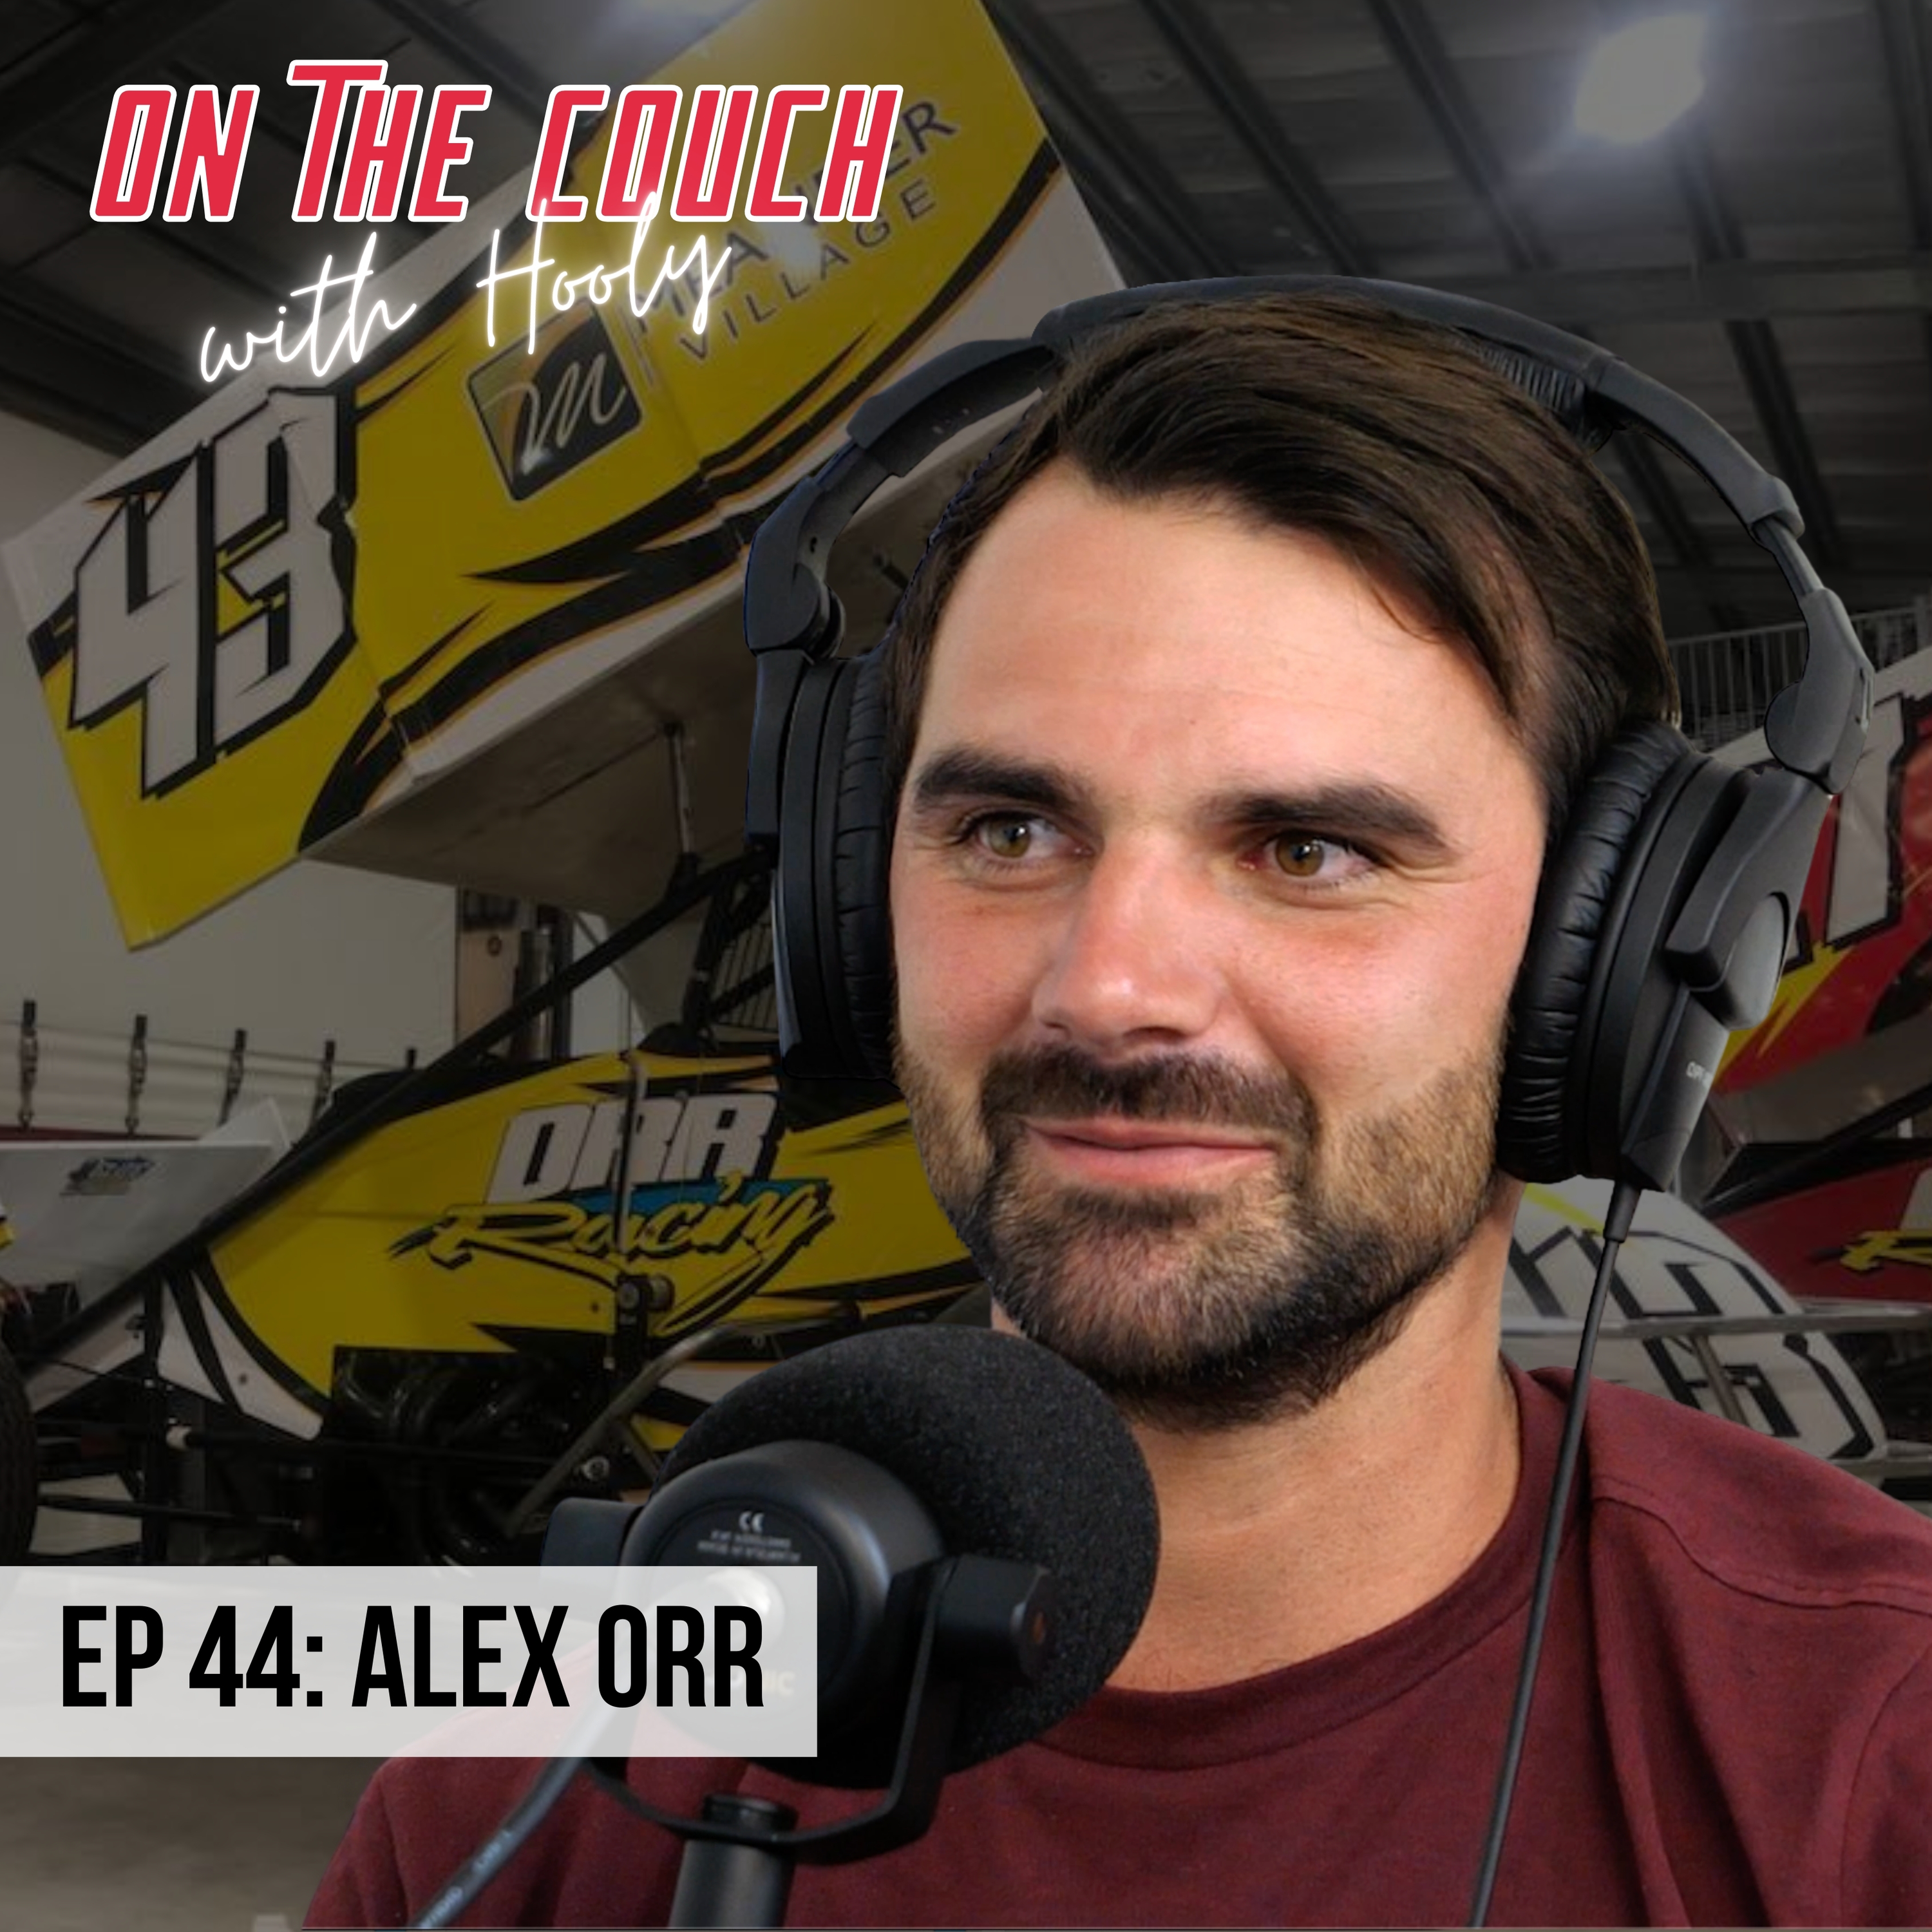 Alex Orr | Real, Raw & Fiery - The Sprintcar edition